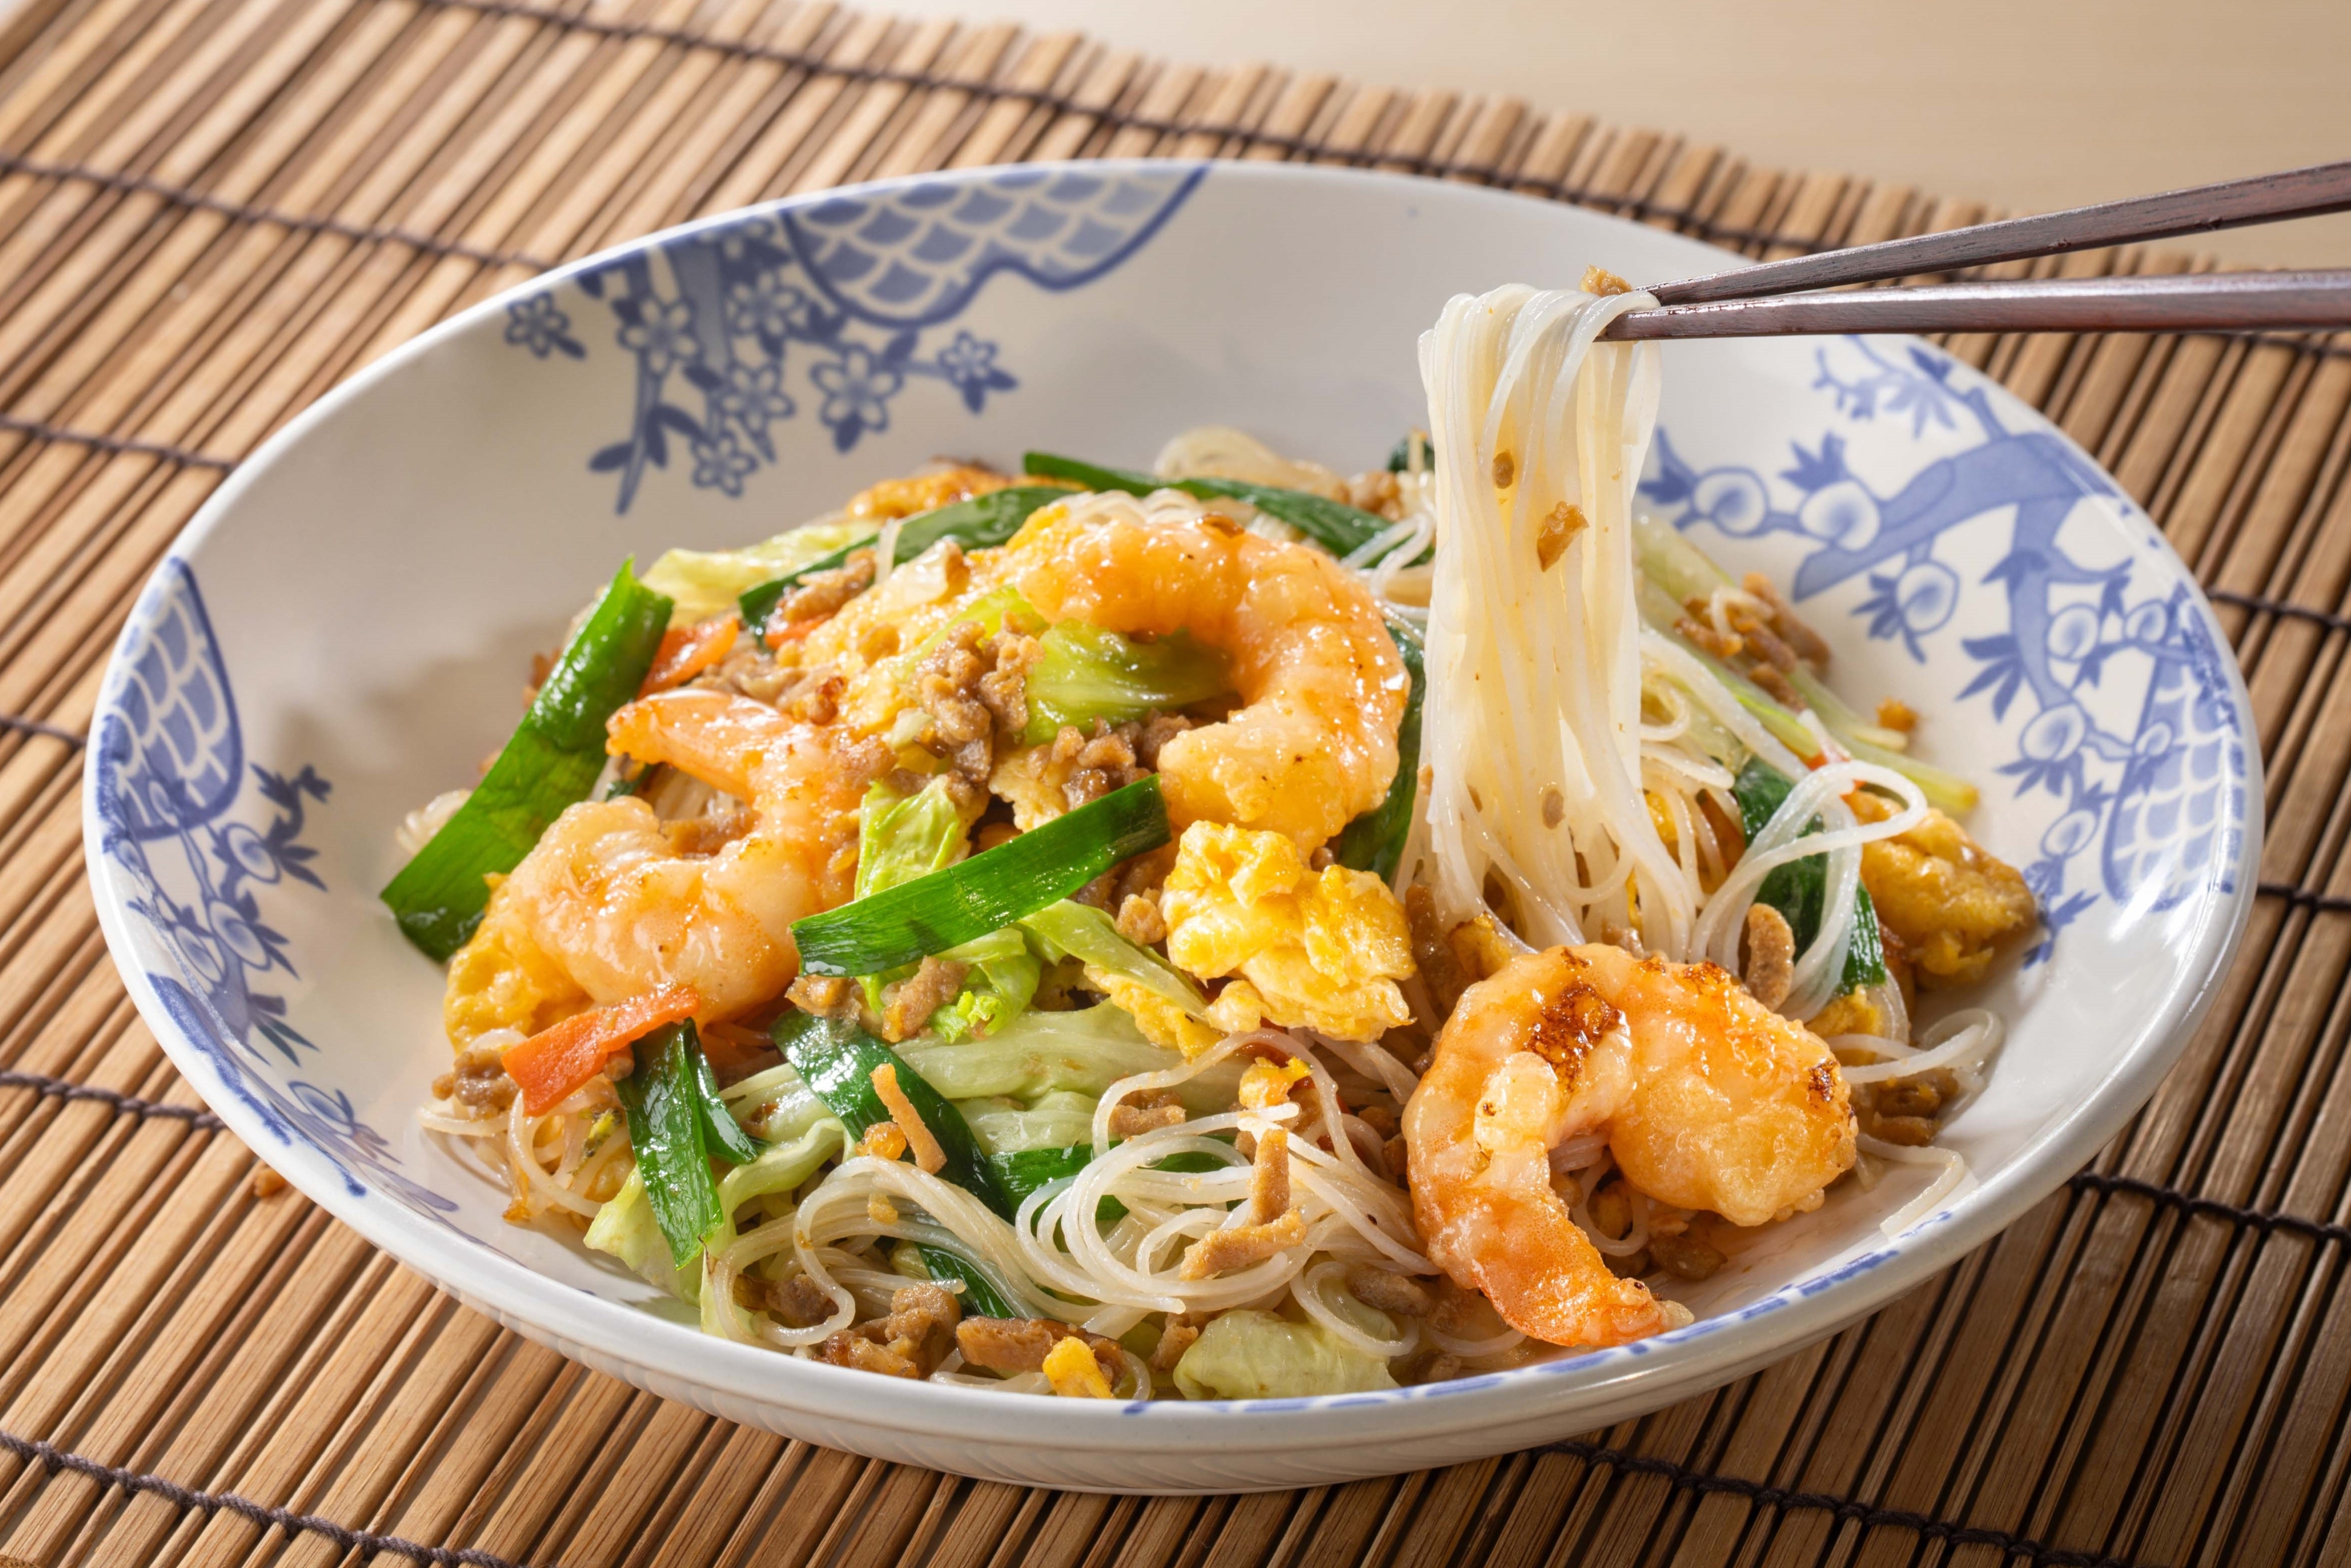 海老と野菜が入ったアジア風の麺料理を箸で持ち上げている様子。